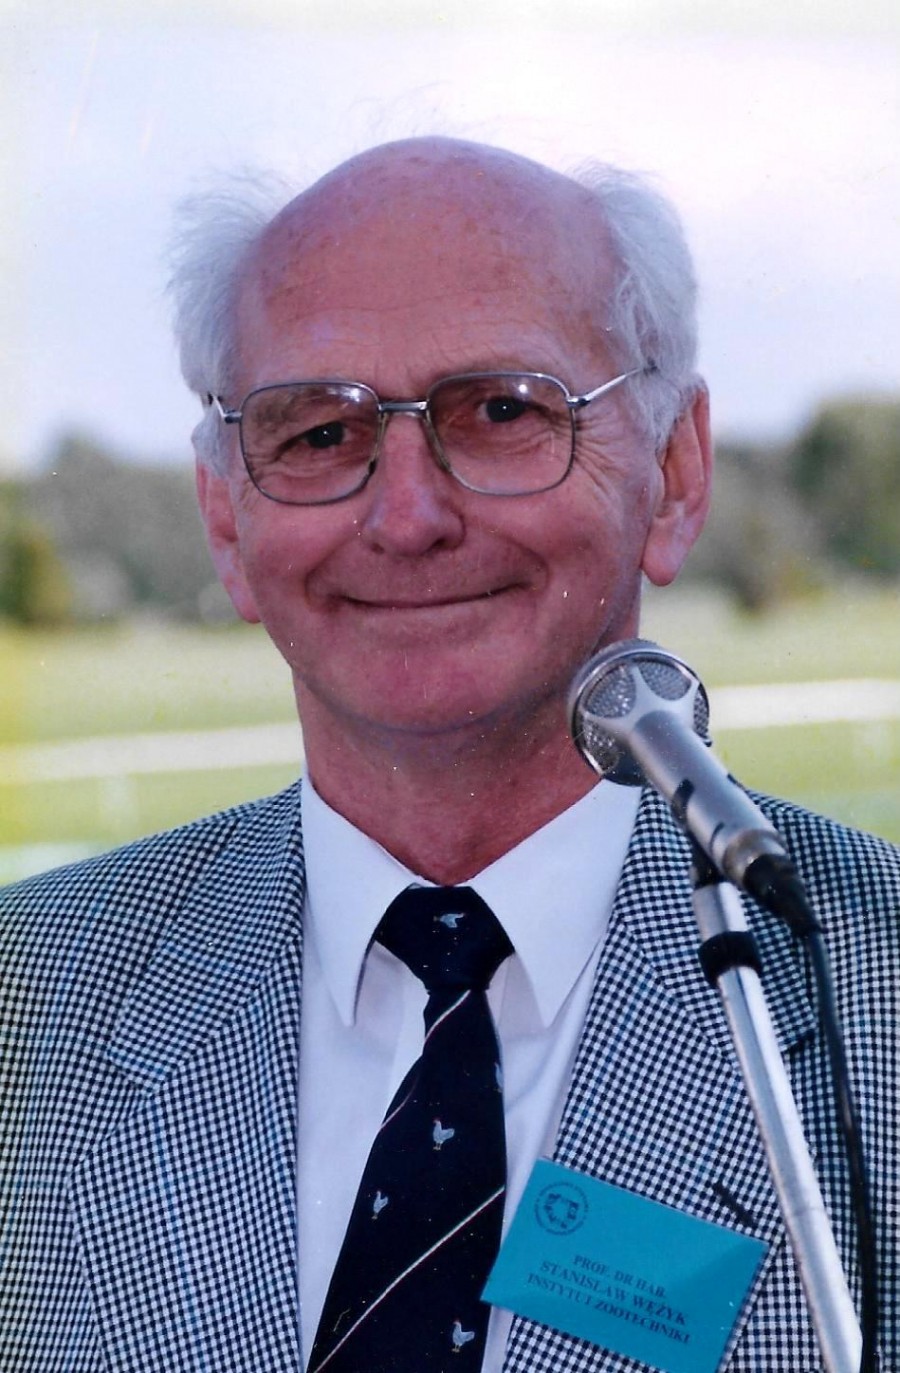 Profesor Stanisław Wężyk zdjęcie archiwum prywatne SW